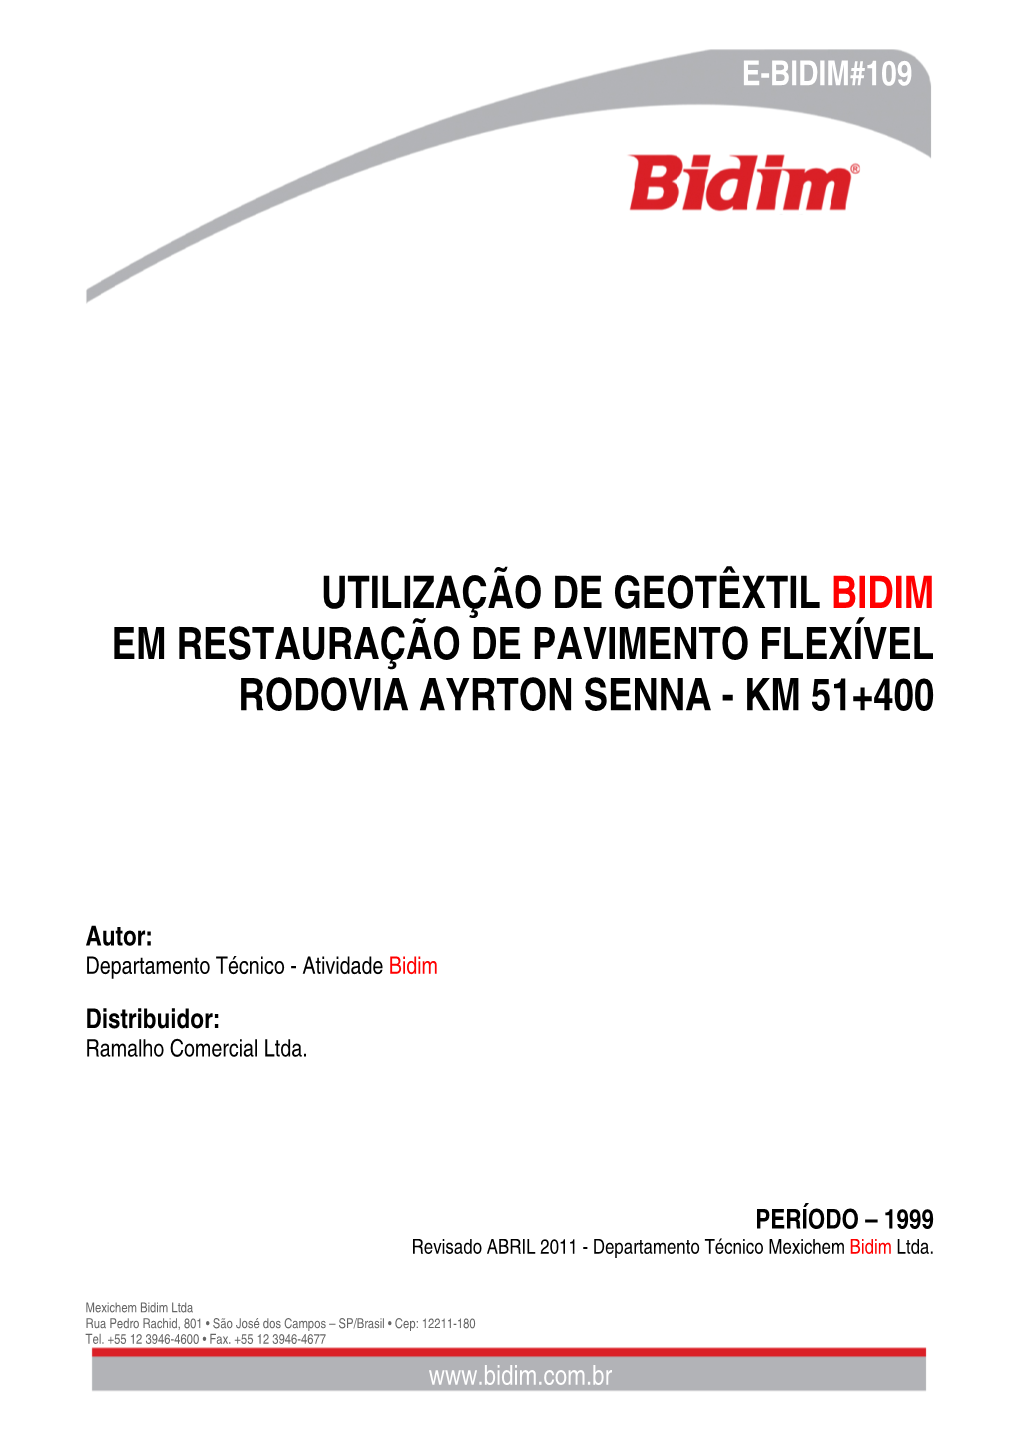 Utilização De Geotêxtil Bidim Em Restauração De Pavimento Flexível Rodovia Ayrton Senna - Km 51+400